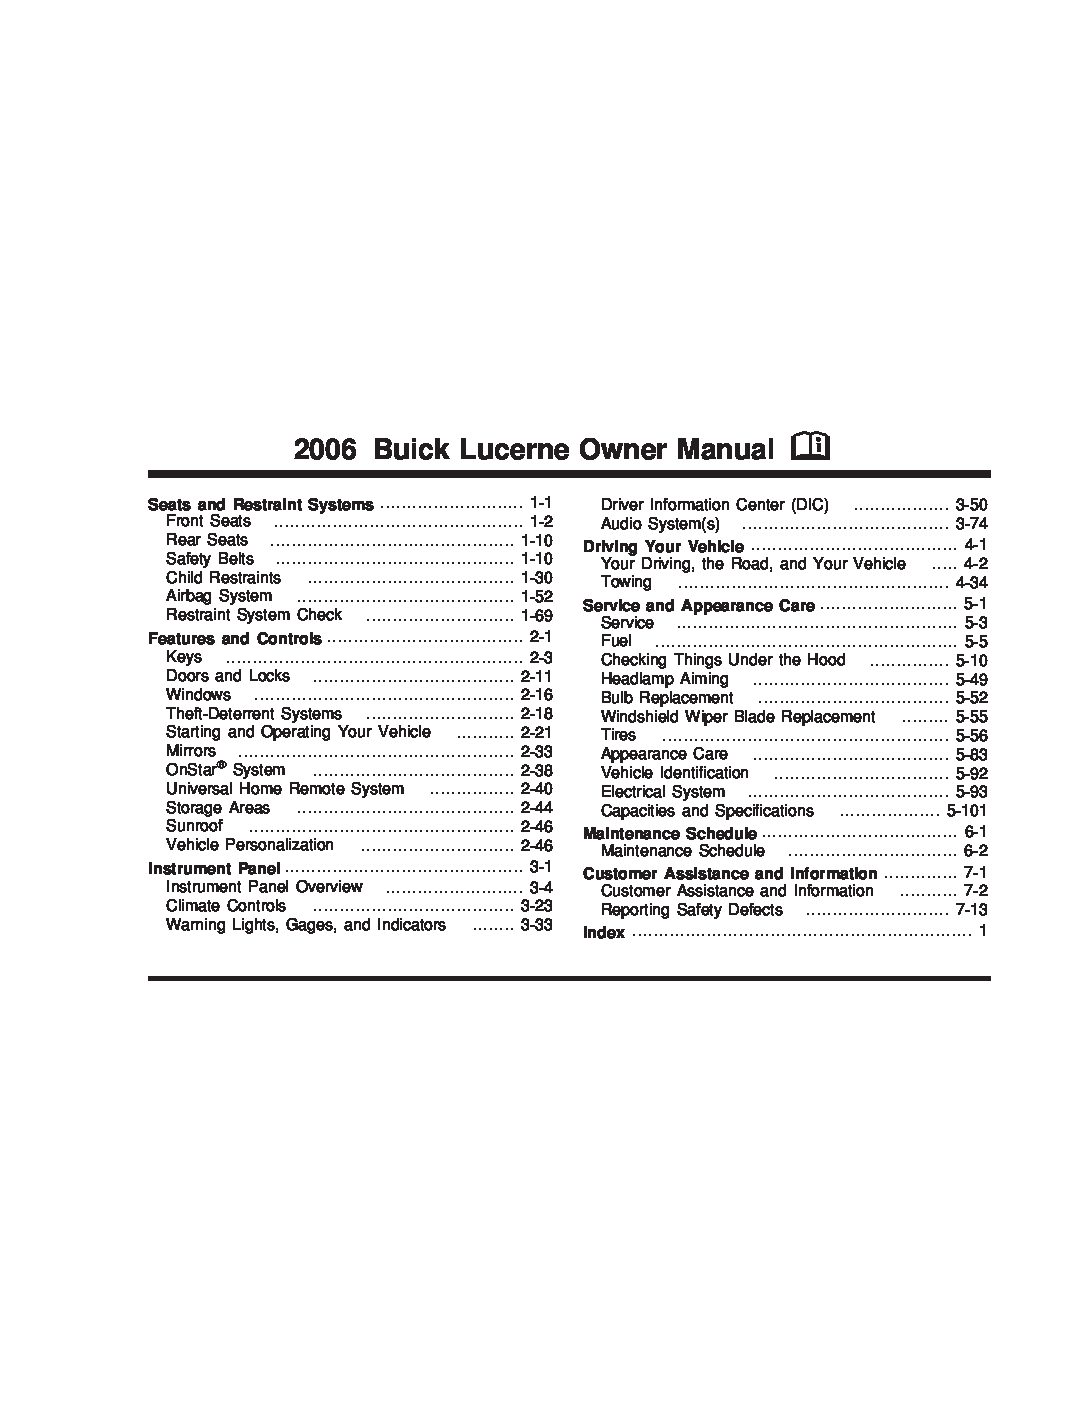 2008 buick lucerne repair manual